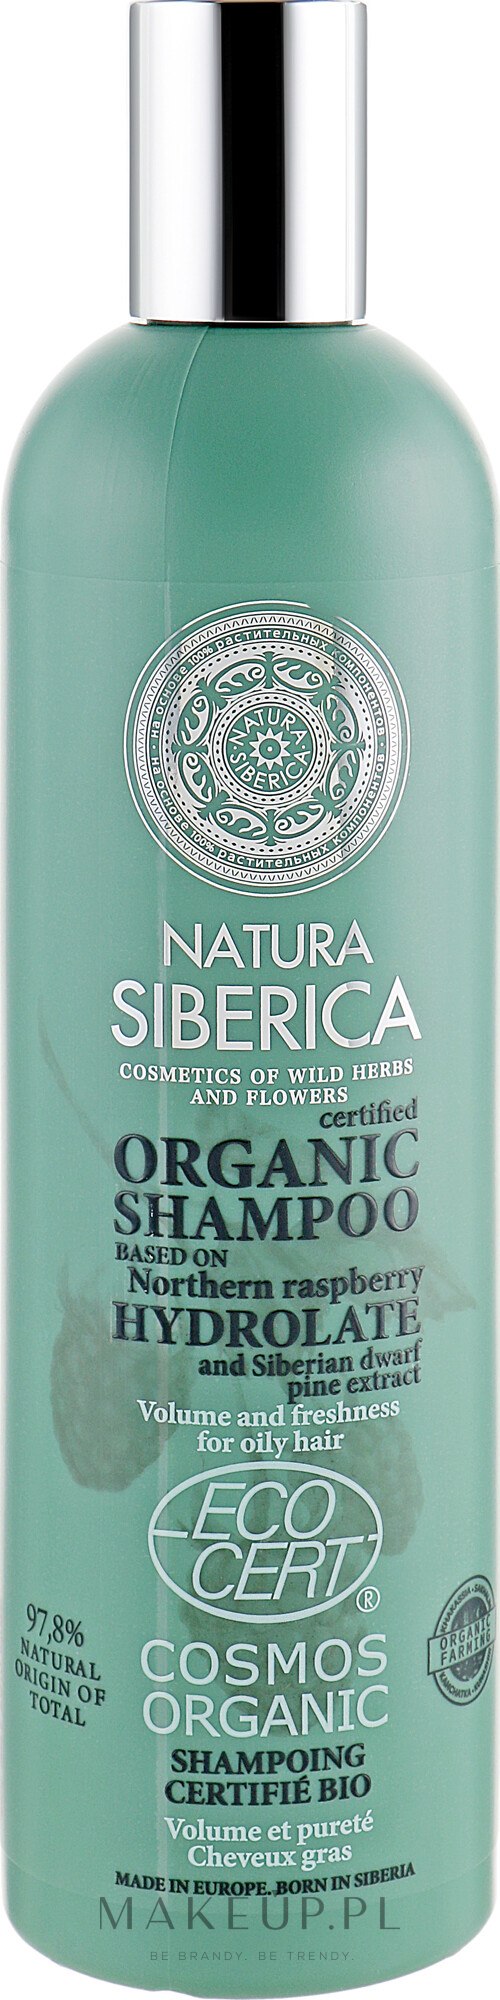 szampon do włosów natura siberica